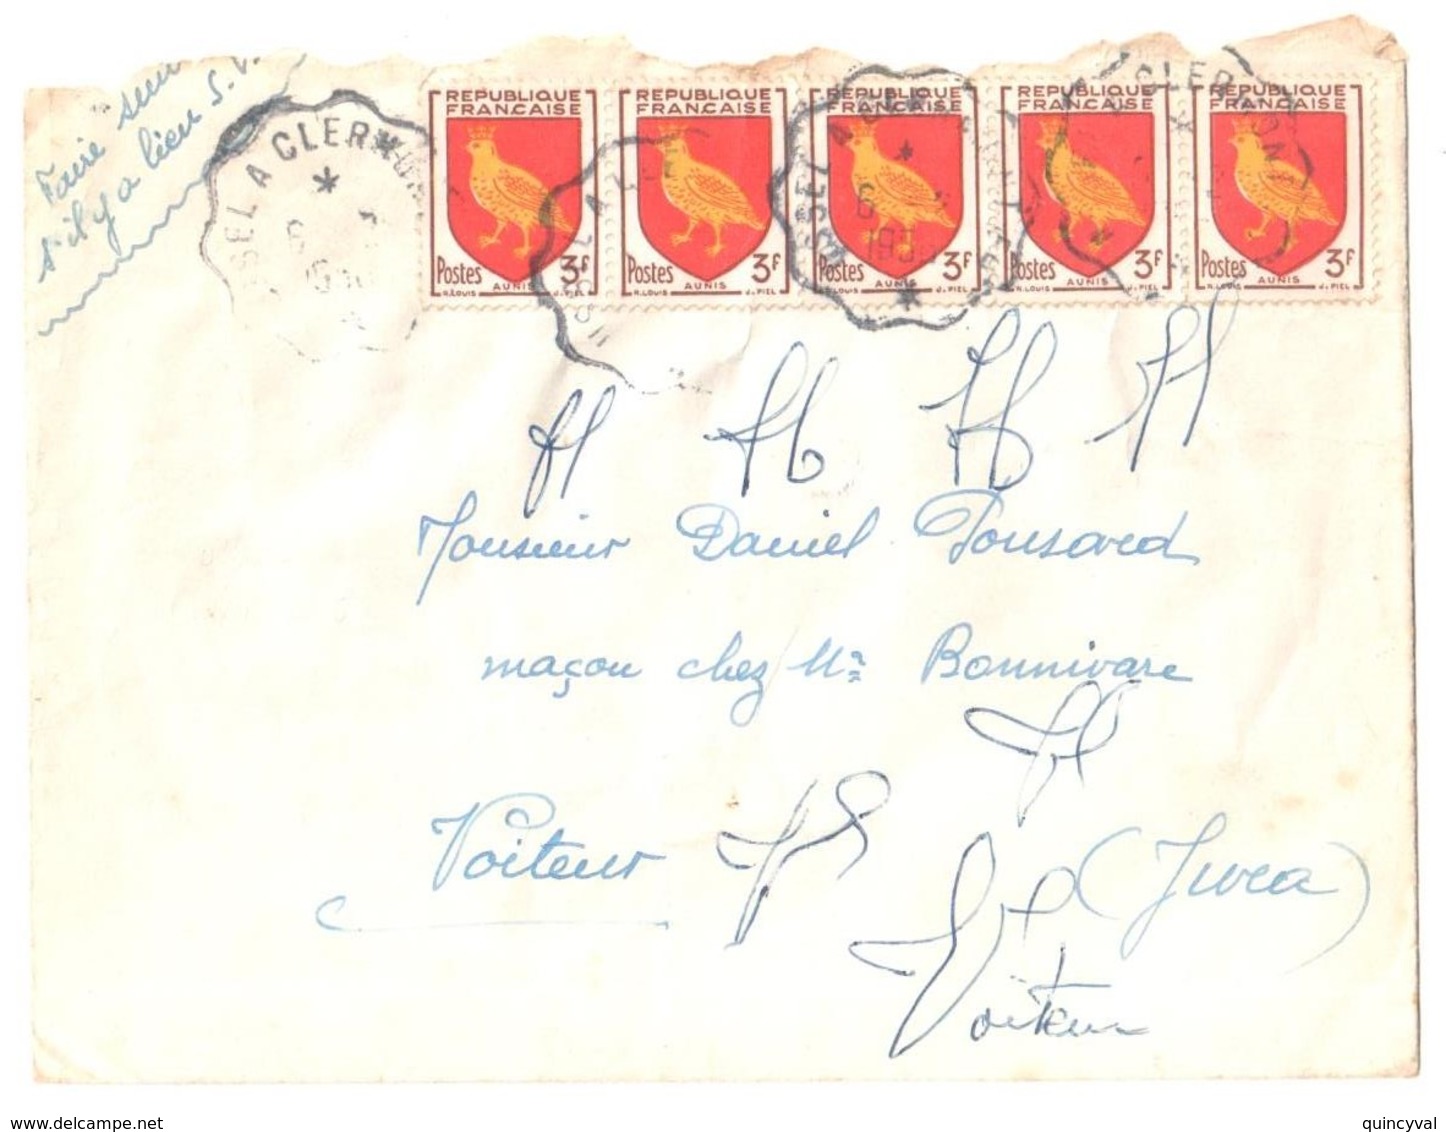 USSEL à CLERMONT Ob Courrier Convoyeur Ndulé 6 2 1956 Lettre 3 F Aunis Yv 1004 - Briefe U. Dokumente